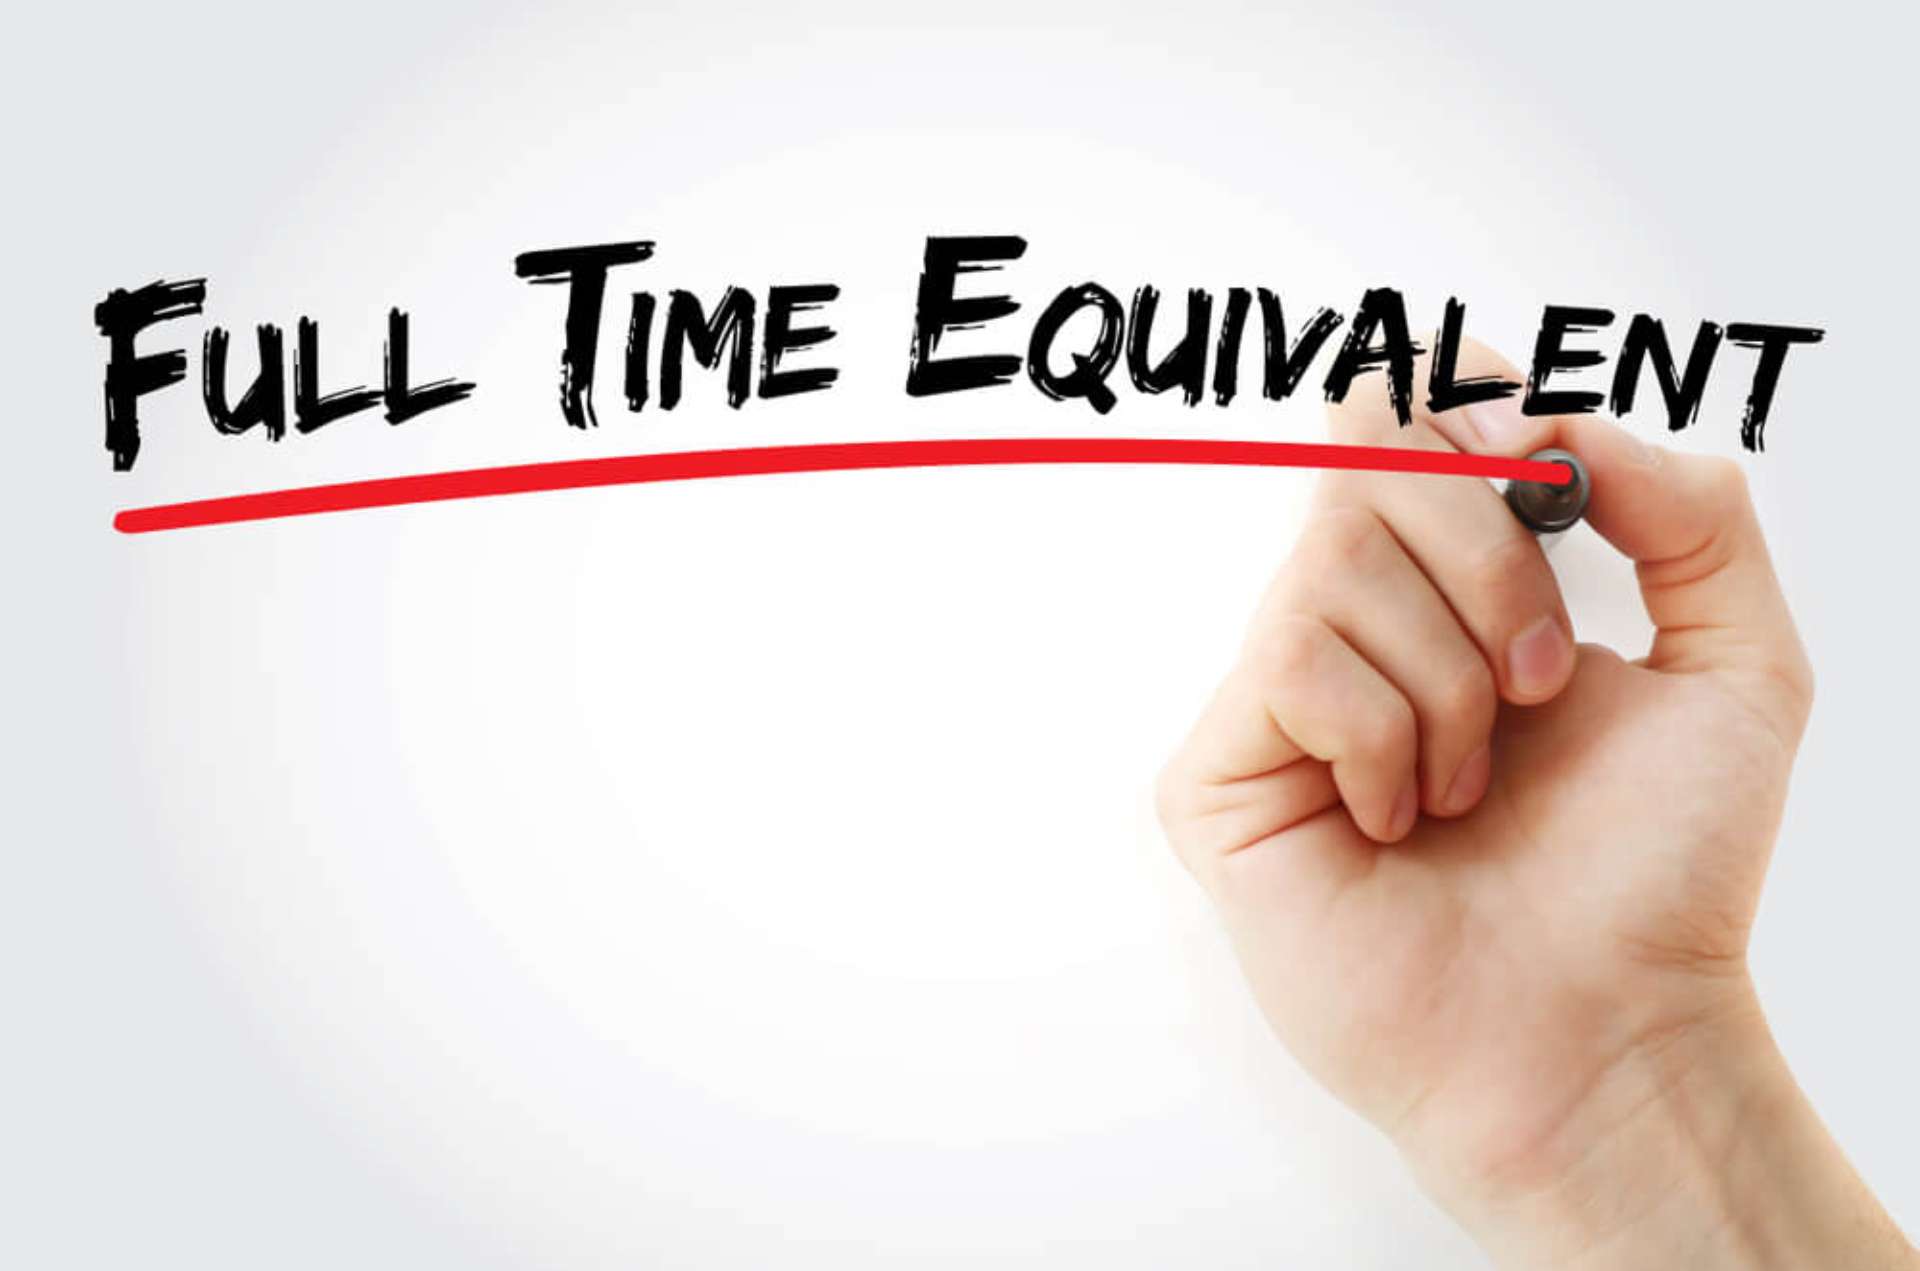 FTE - Full Time Equivalent: seus colaboradores estão sendo tão produtivos quanto podem?